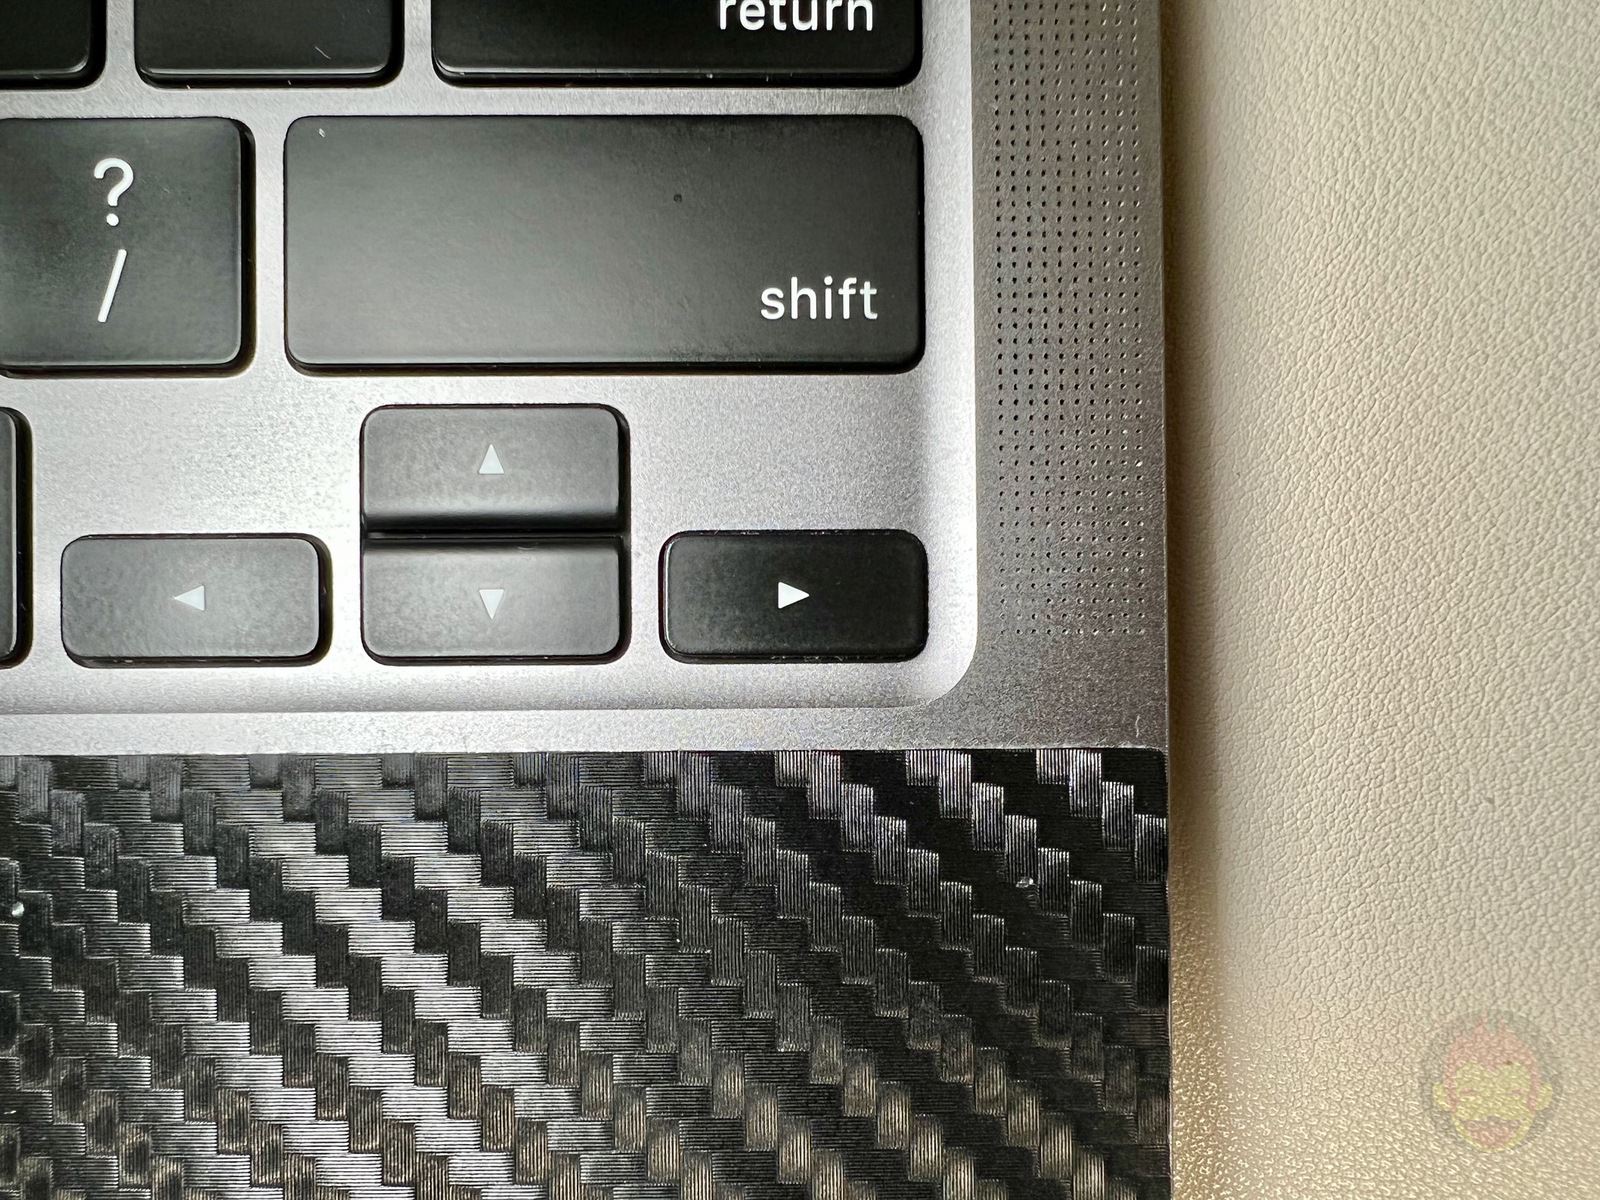 MacBook Proのキーボード